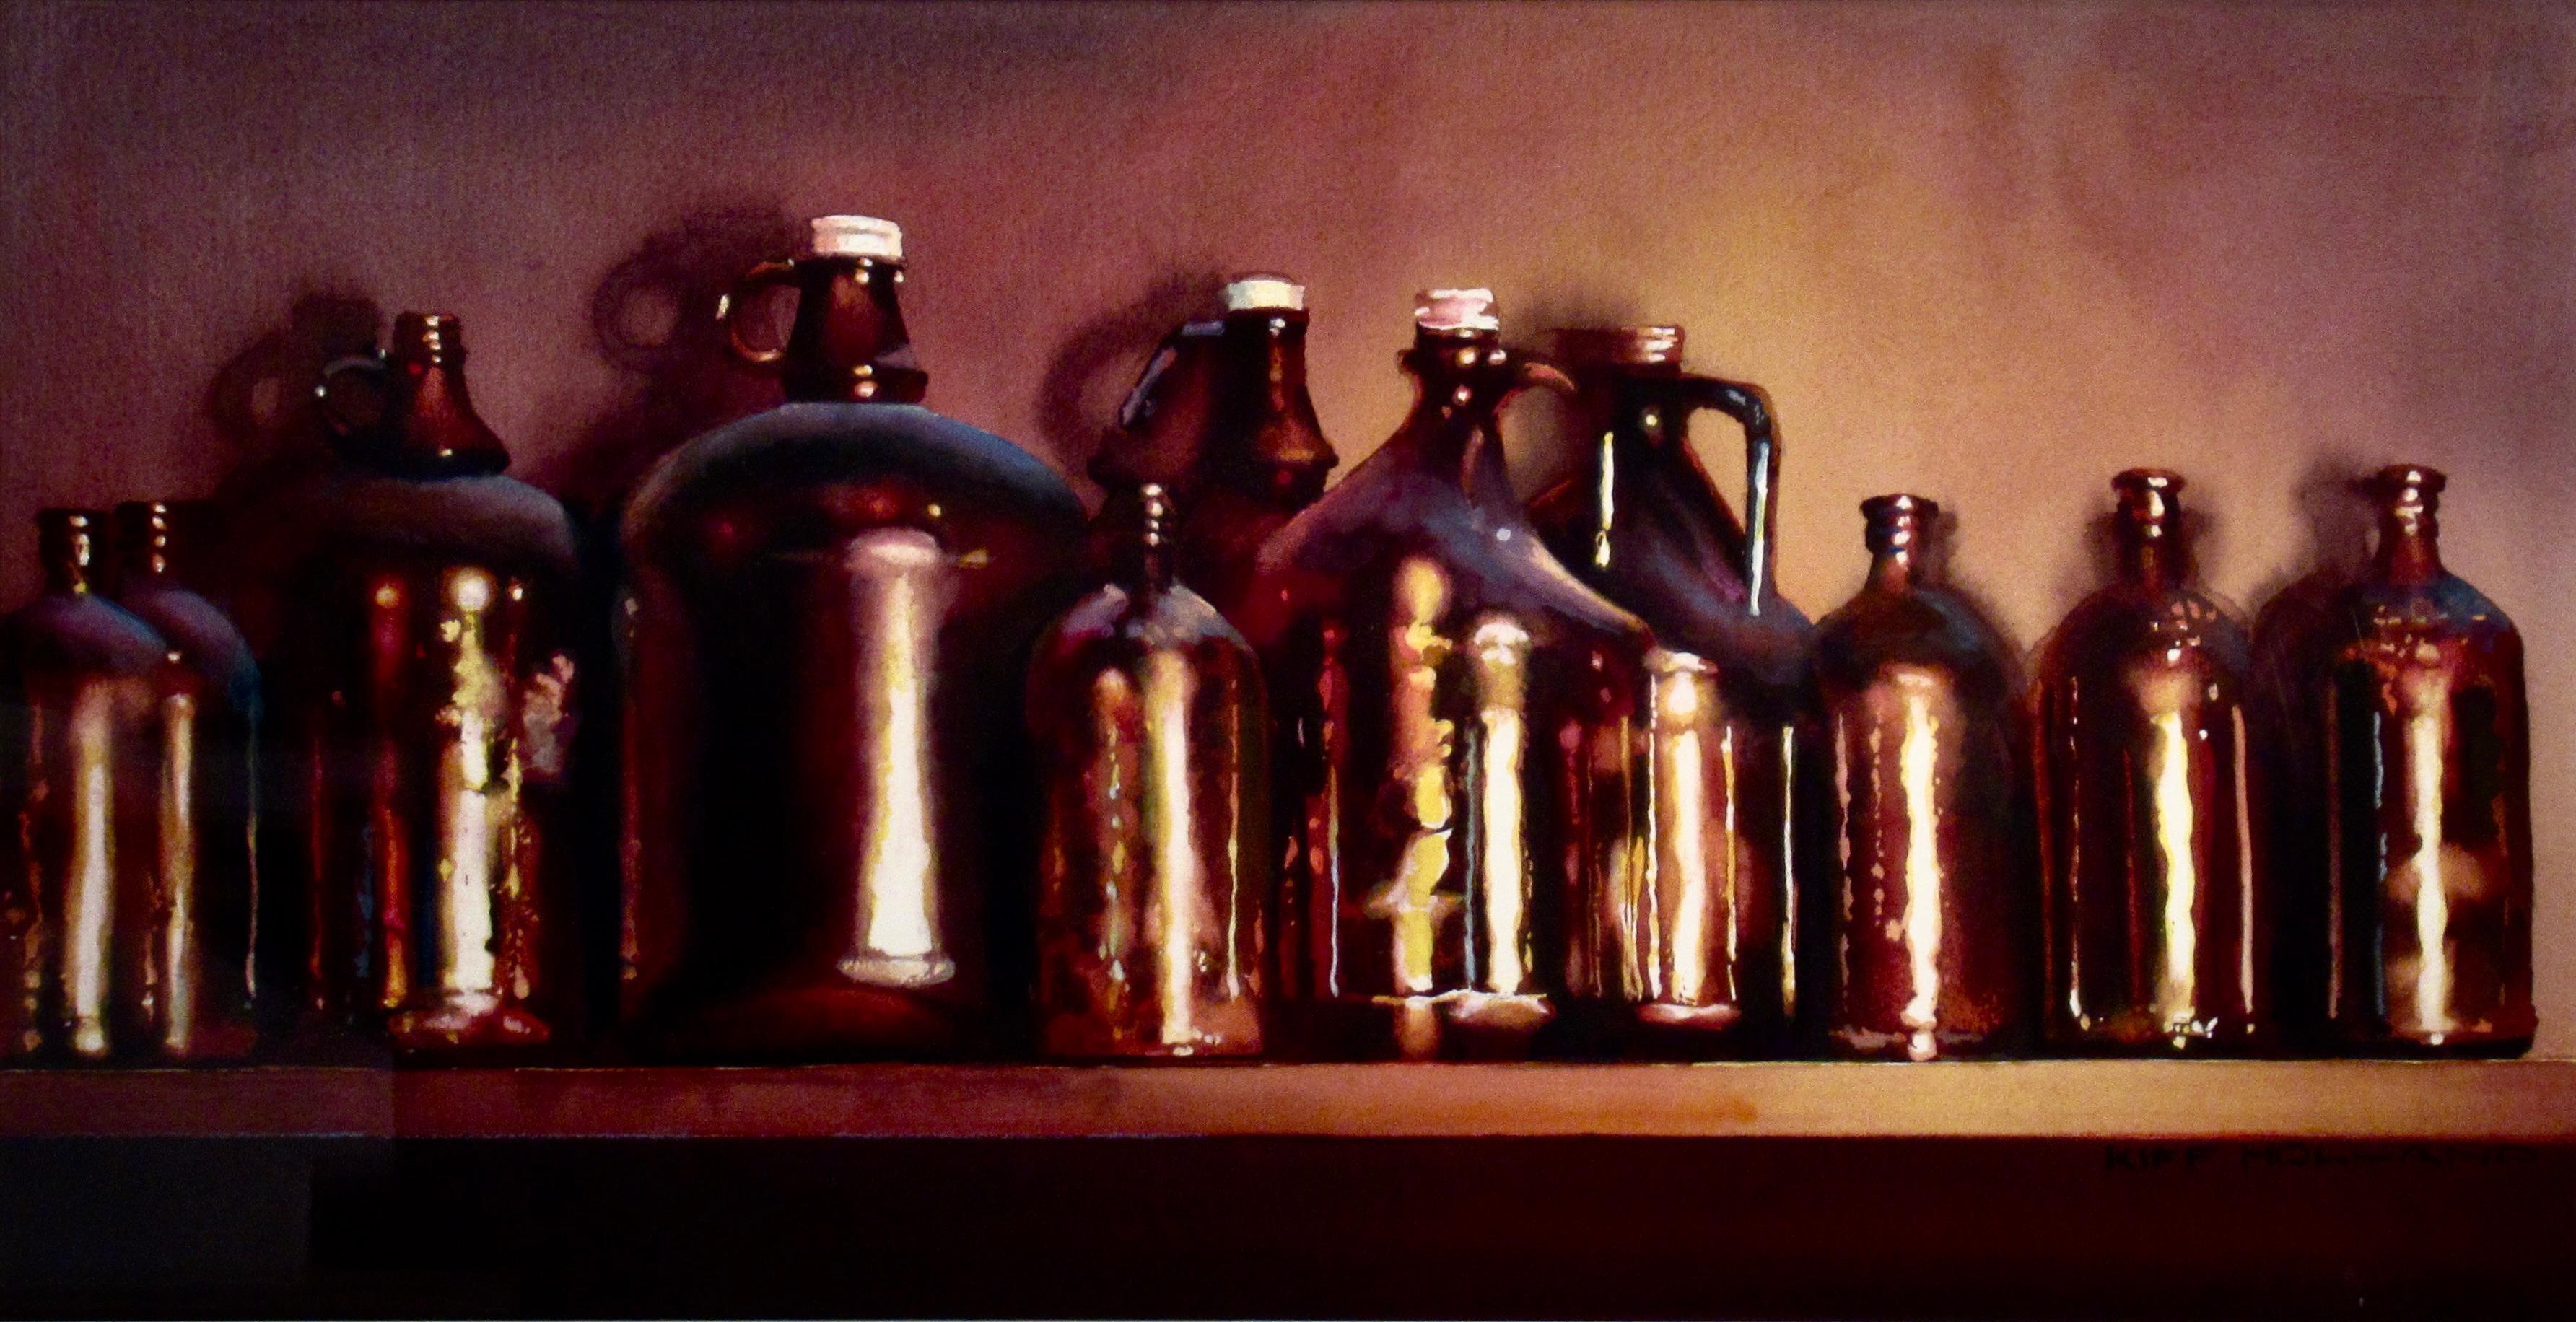 Zehn Flaschen – Art von Kiff Holland